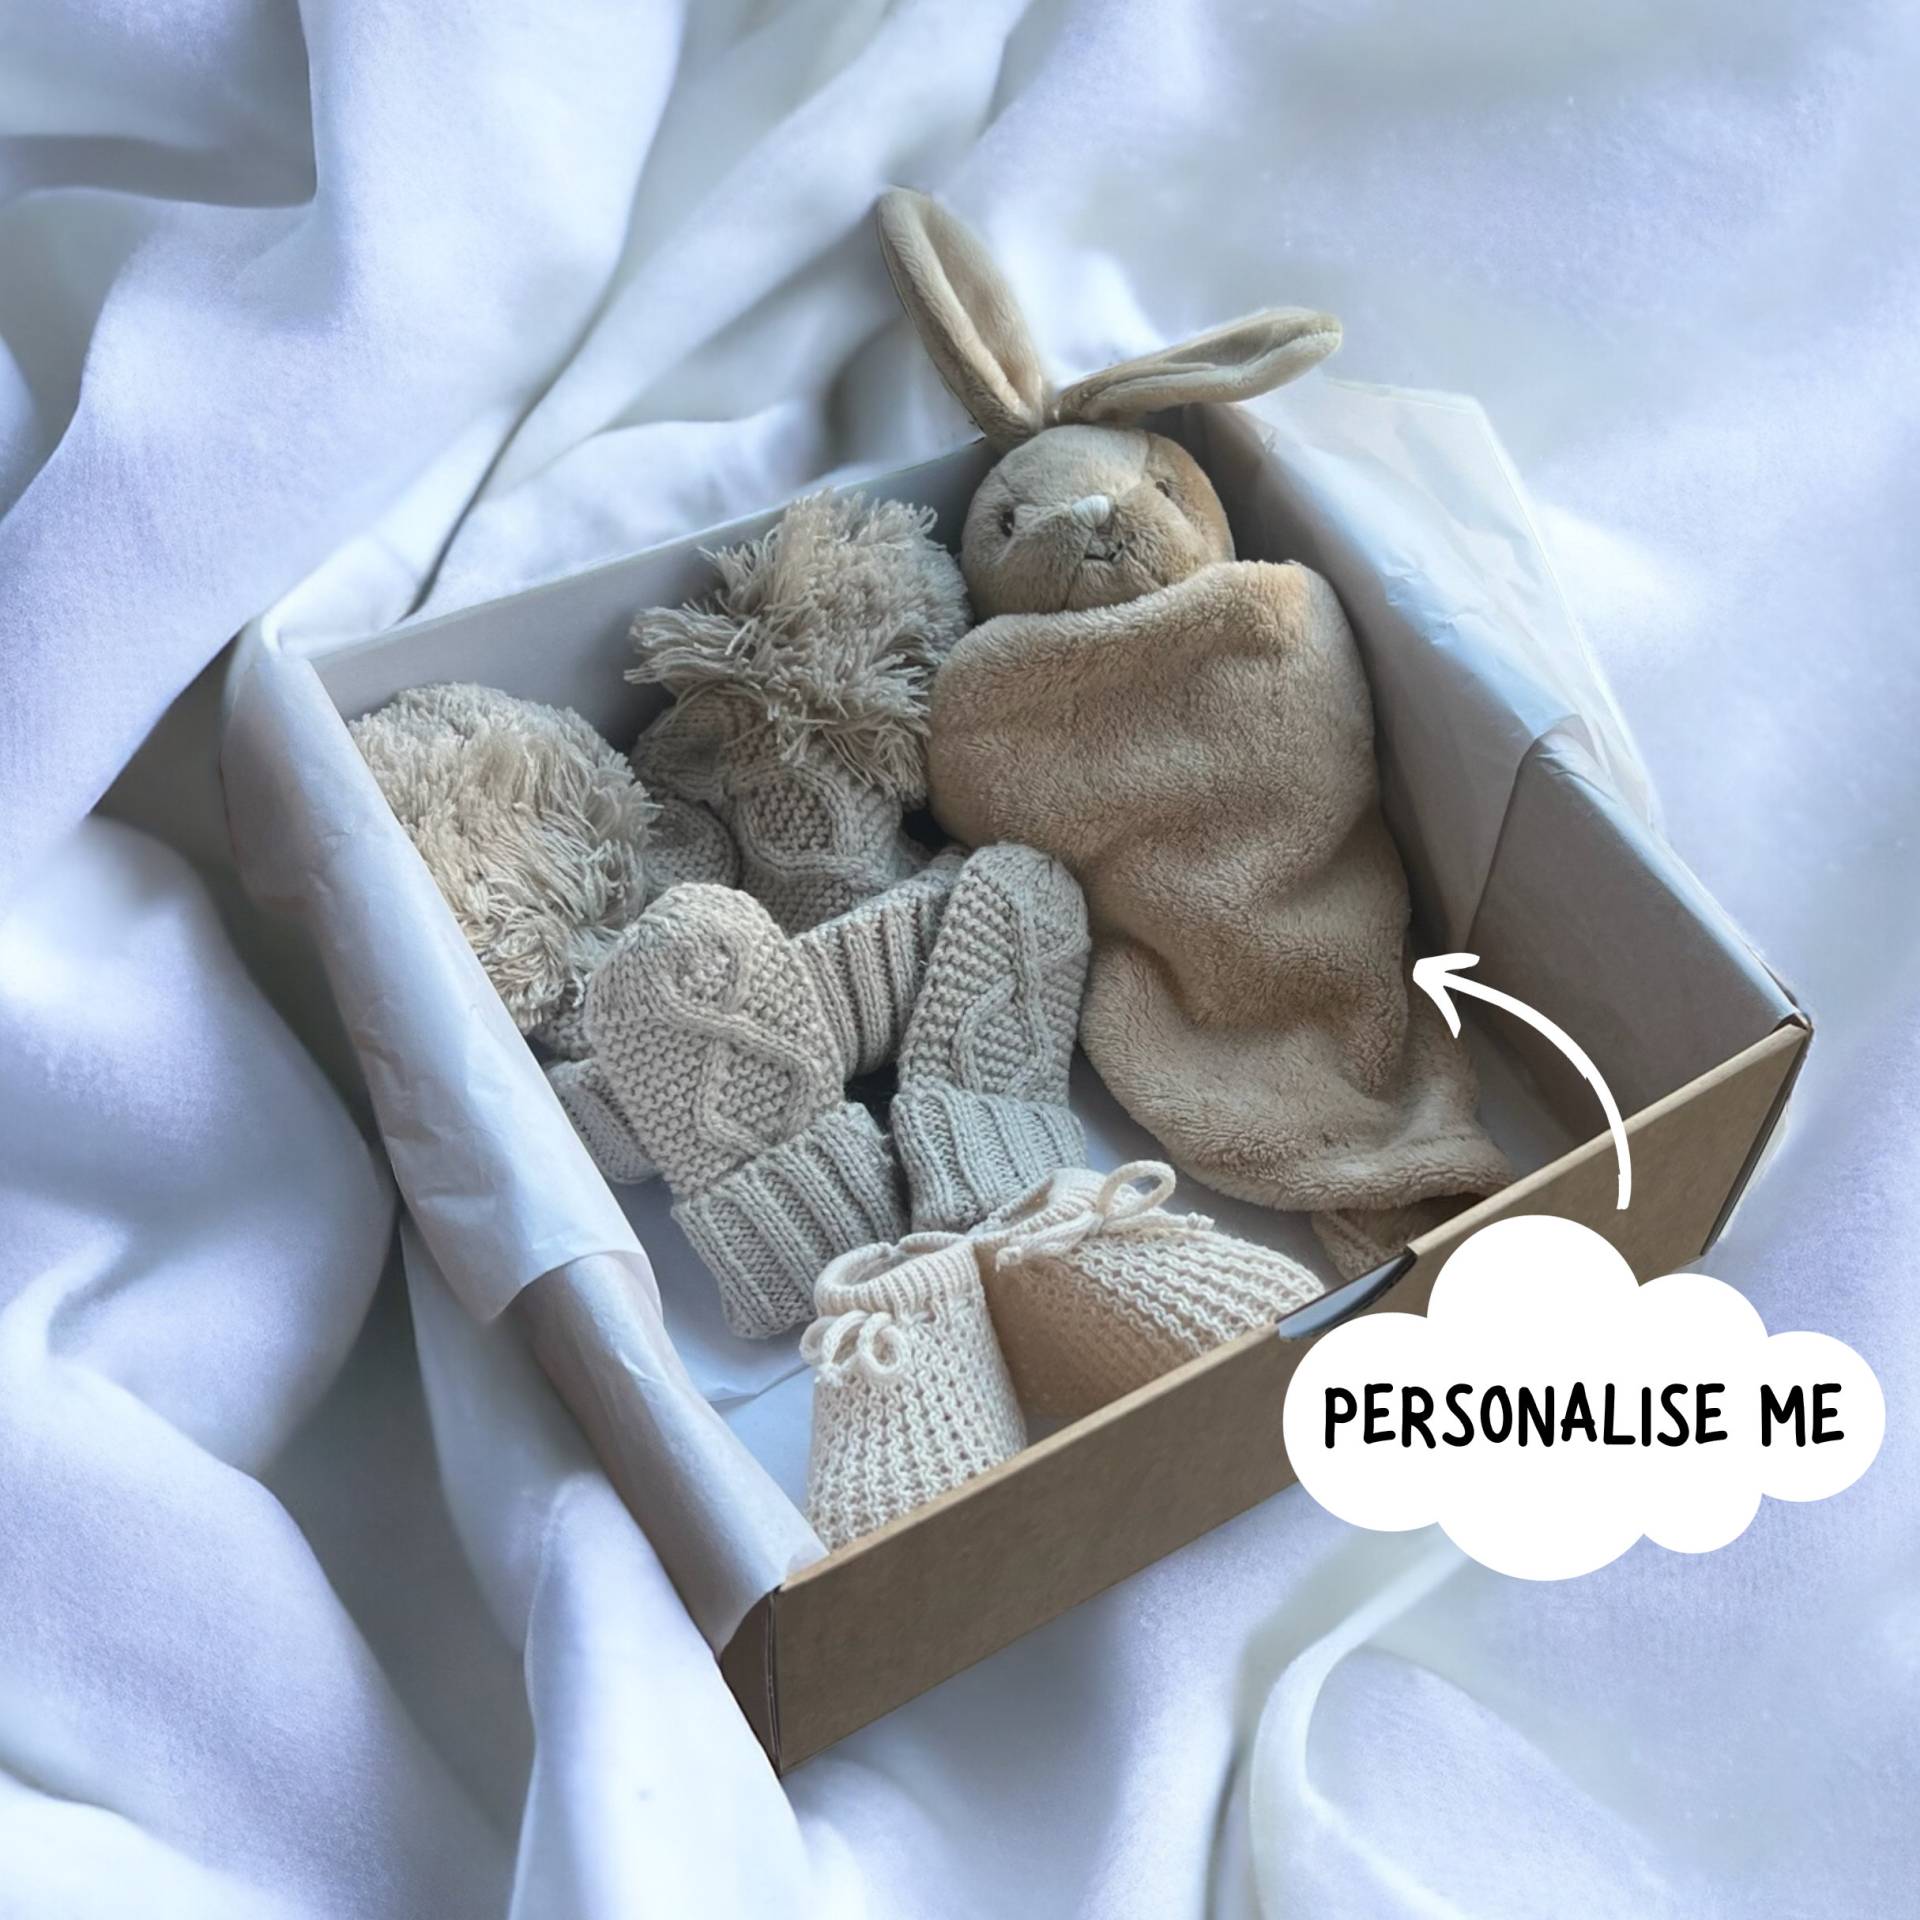 Personalisierter Unisex Baby-Geschenkkorb, Neutrales Baby-Jungen-Mädchen-Gif, Baby-Duschegeschenk, Baby-Häschengeschenk, Baby-Geschenkset Für Jungen von Etsy - thebababee